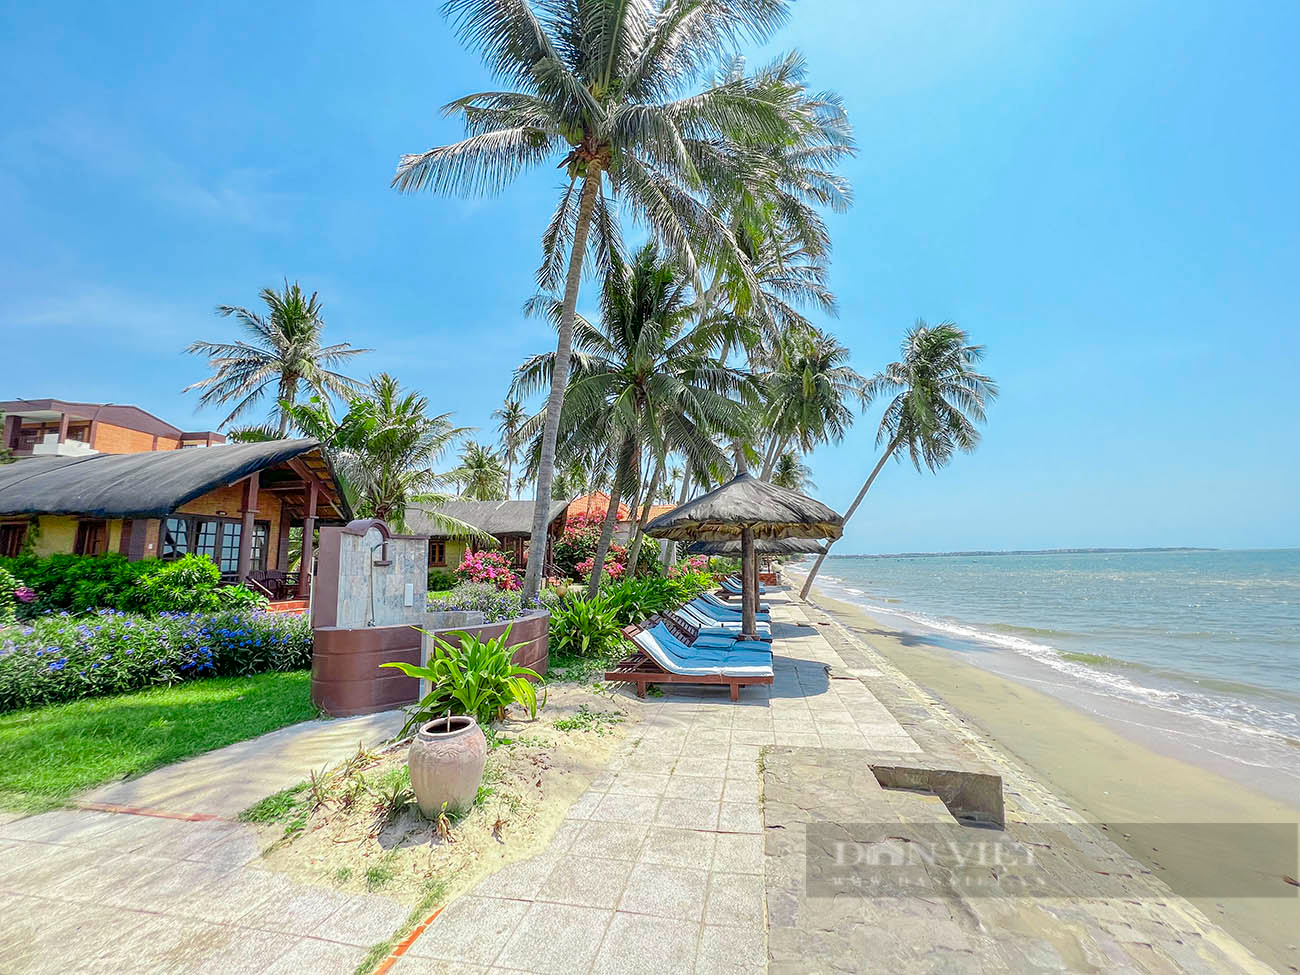 Vì sao các bãi biển Phan Thiết tỉnh Bình Thuận nằm trong top 10 du khách tìm kiếm để nghỉ dưỡng Quốc Khánh 2/9? - Ảnh 5.